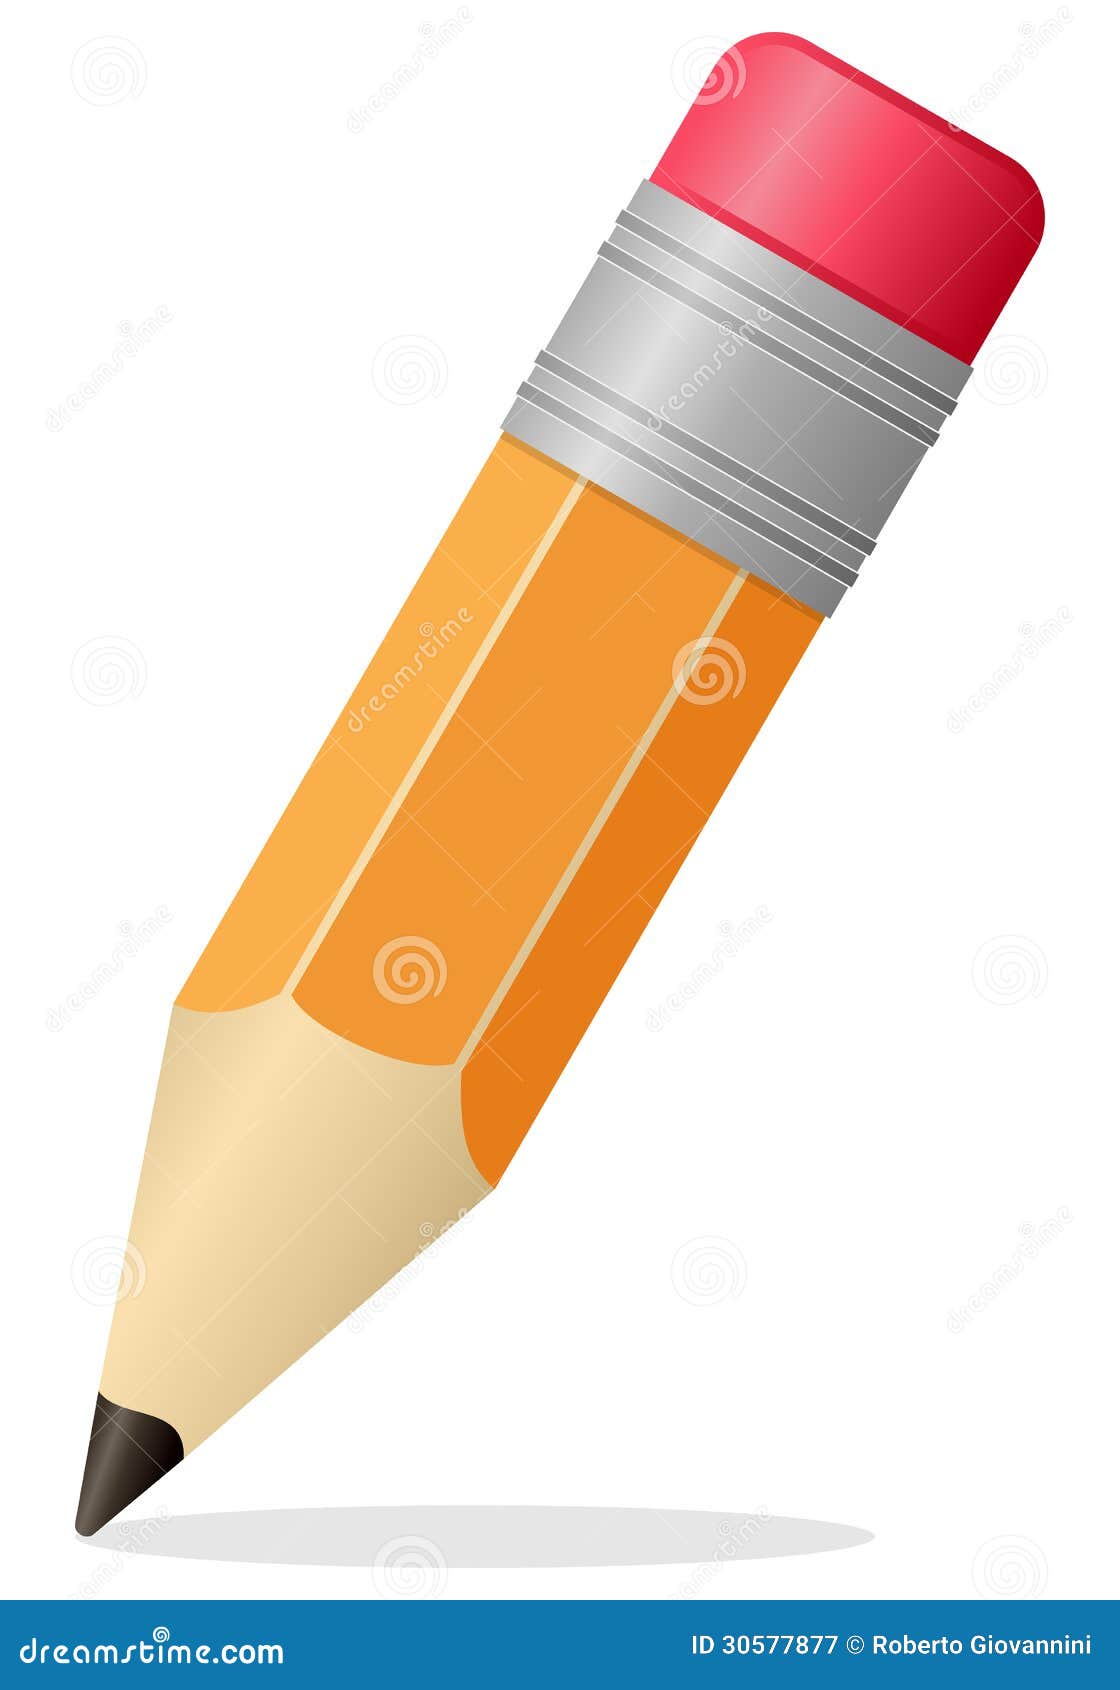 small pencil icon